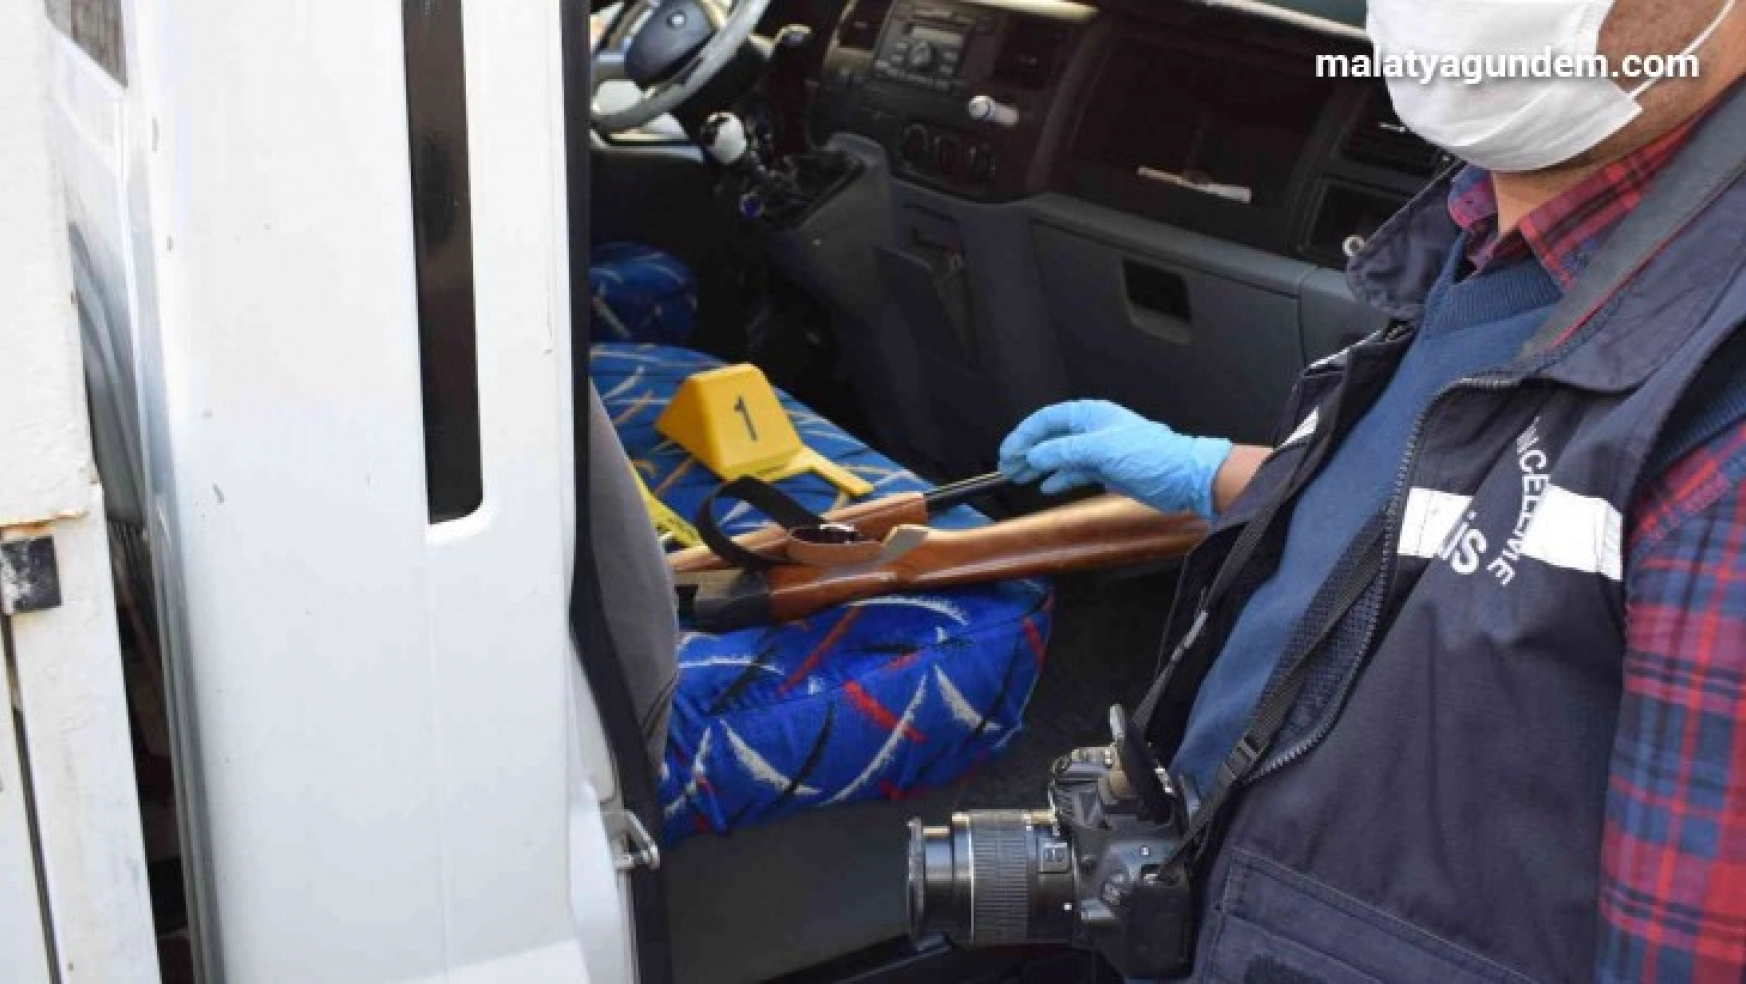 Malatya'da polisin kovaladığı araçtan tüfek çıktı